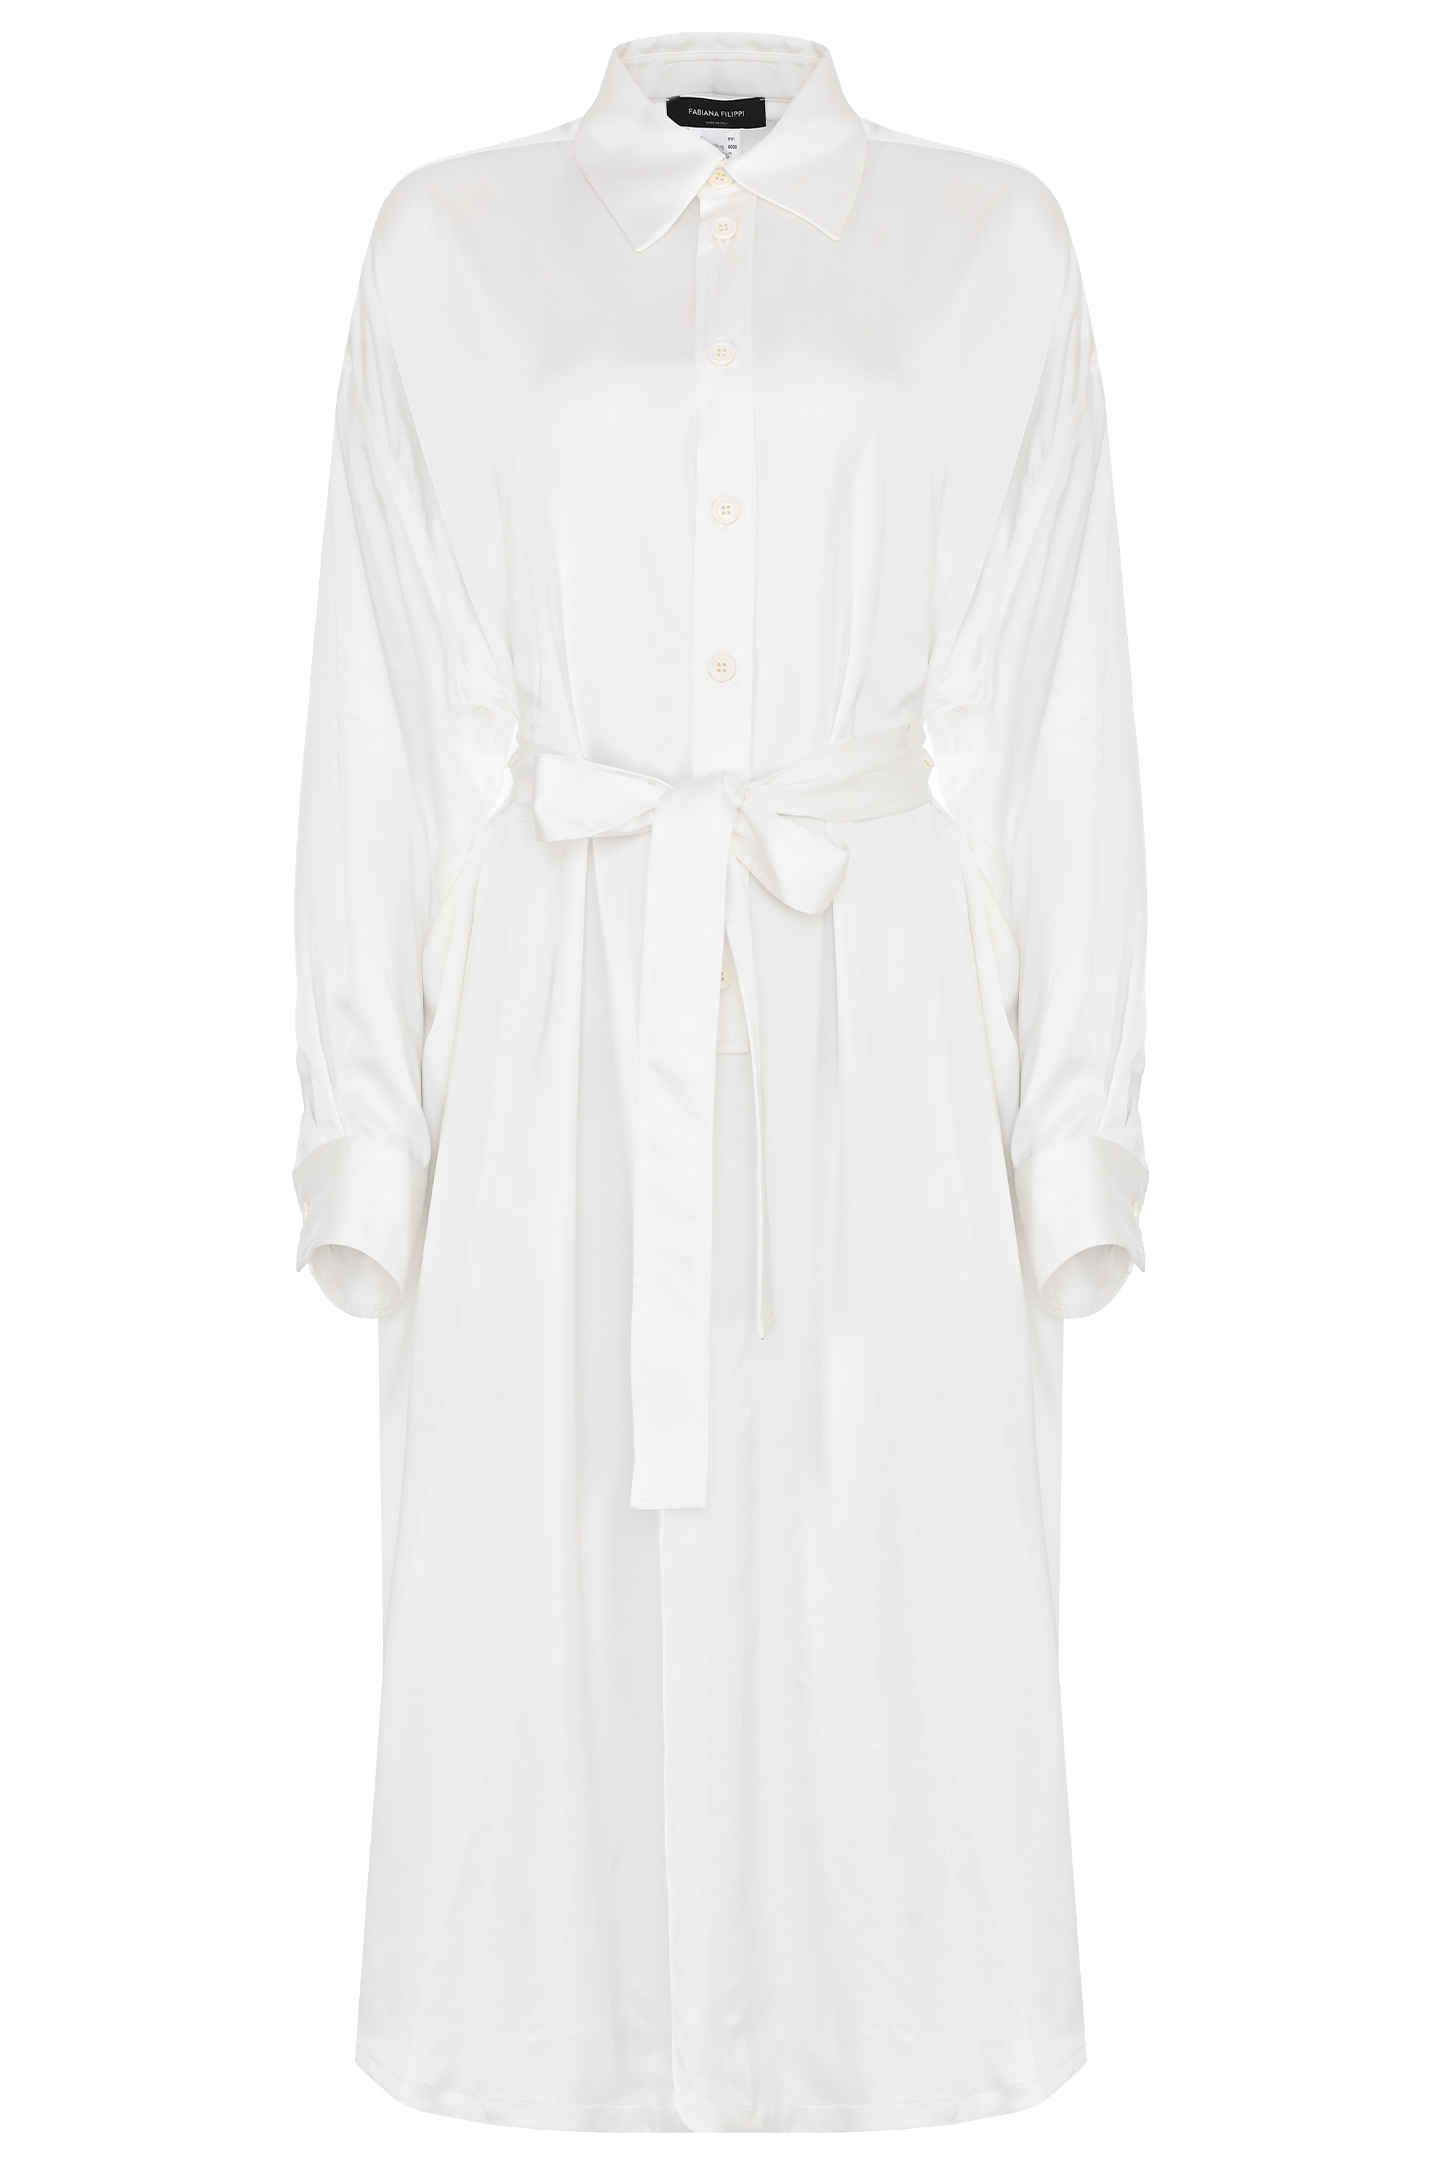 Платье FABIANA FILIPPI ABD264F128 D623, цвет: Белый, Женский